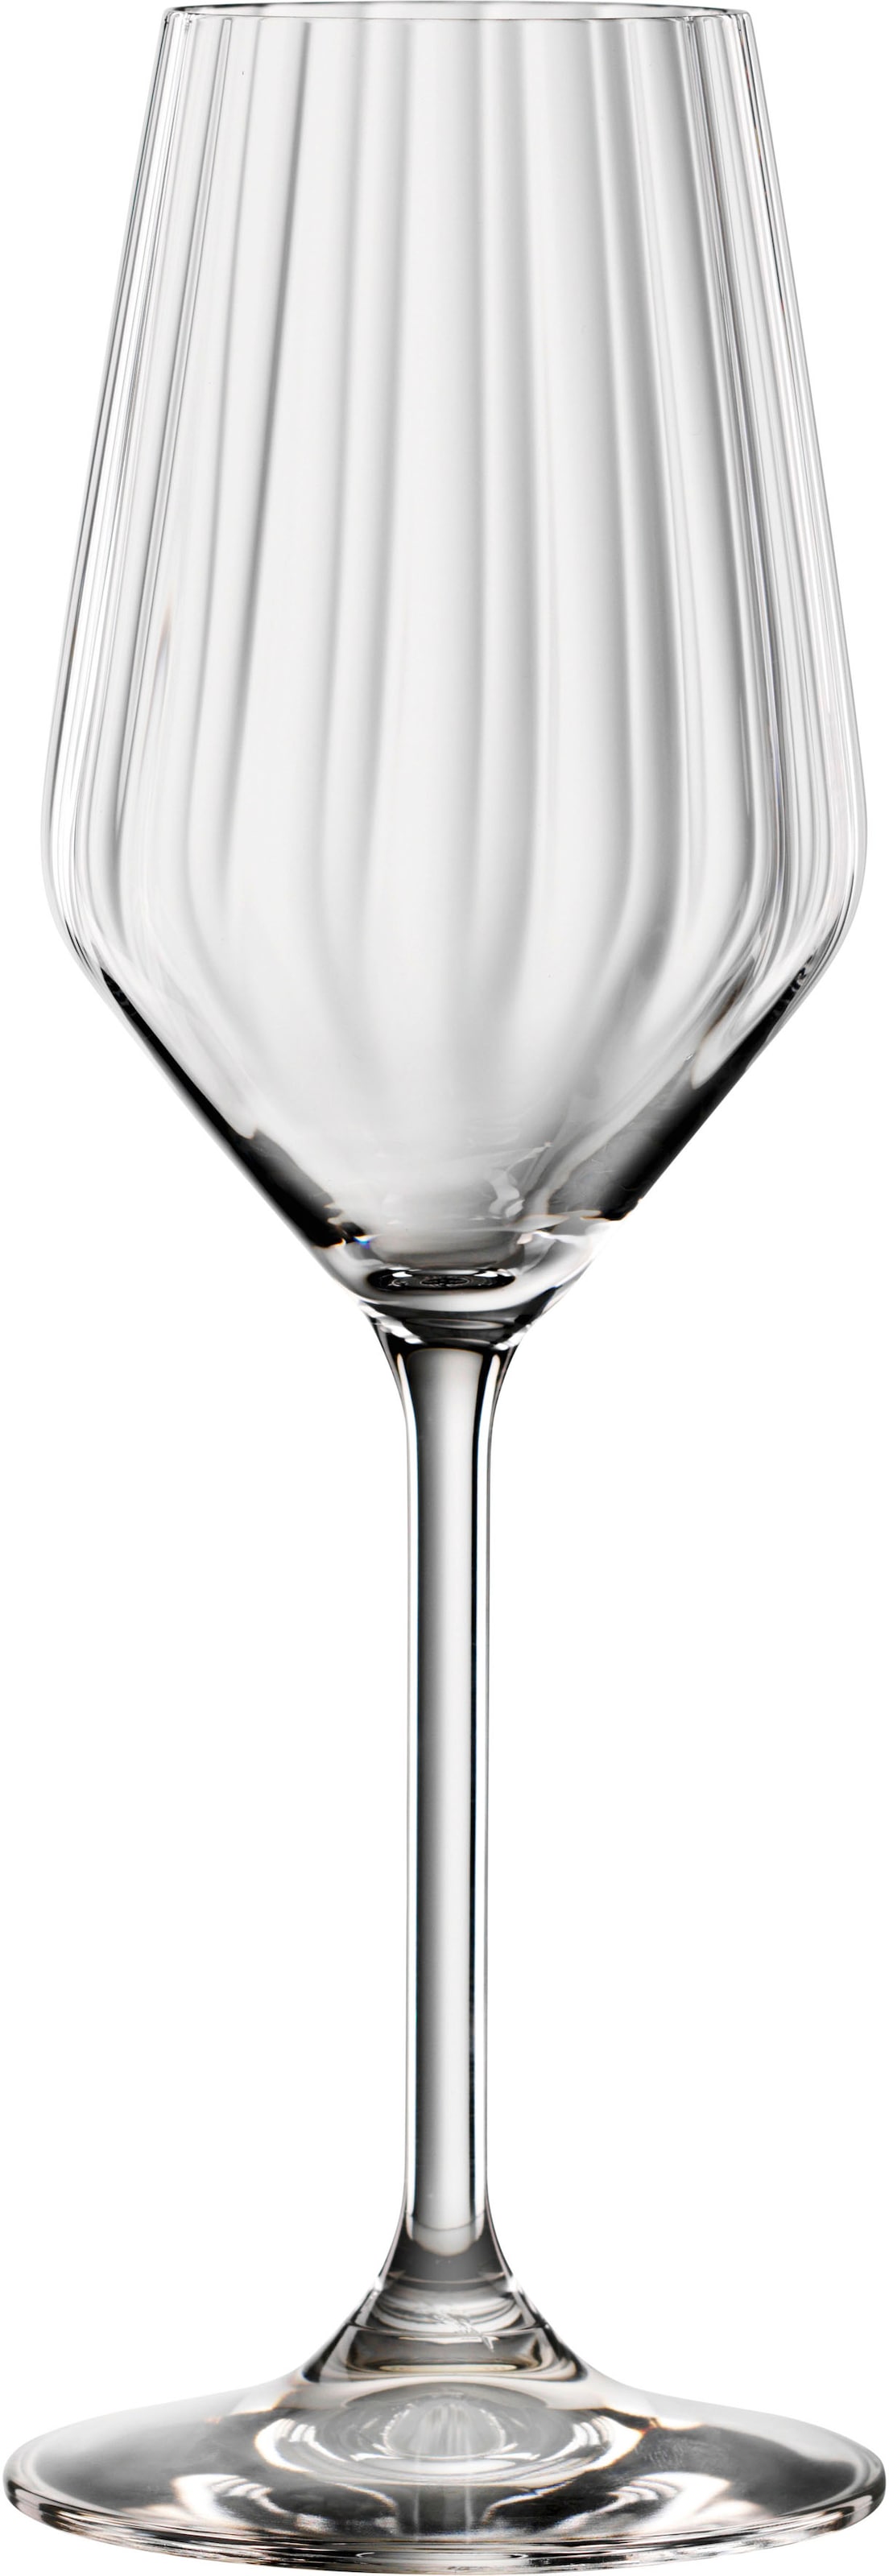 SPIEGELAU Champagnerglas »LifeStyle«, (Set, 4 tlg., Set bestehend aus 4 Gläsern), 310 ml, 4-teilig